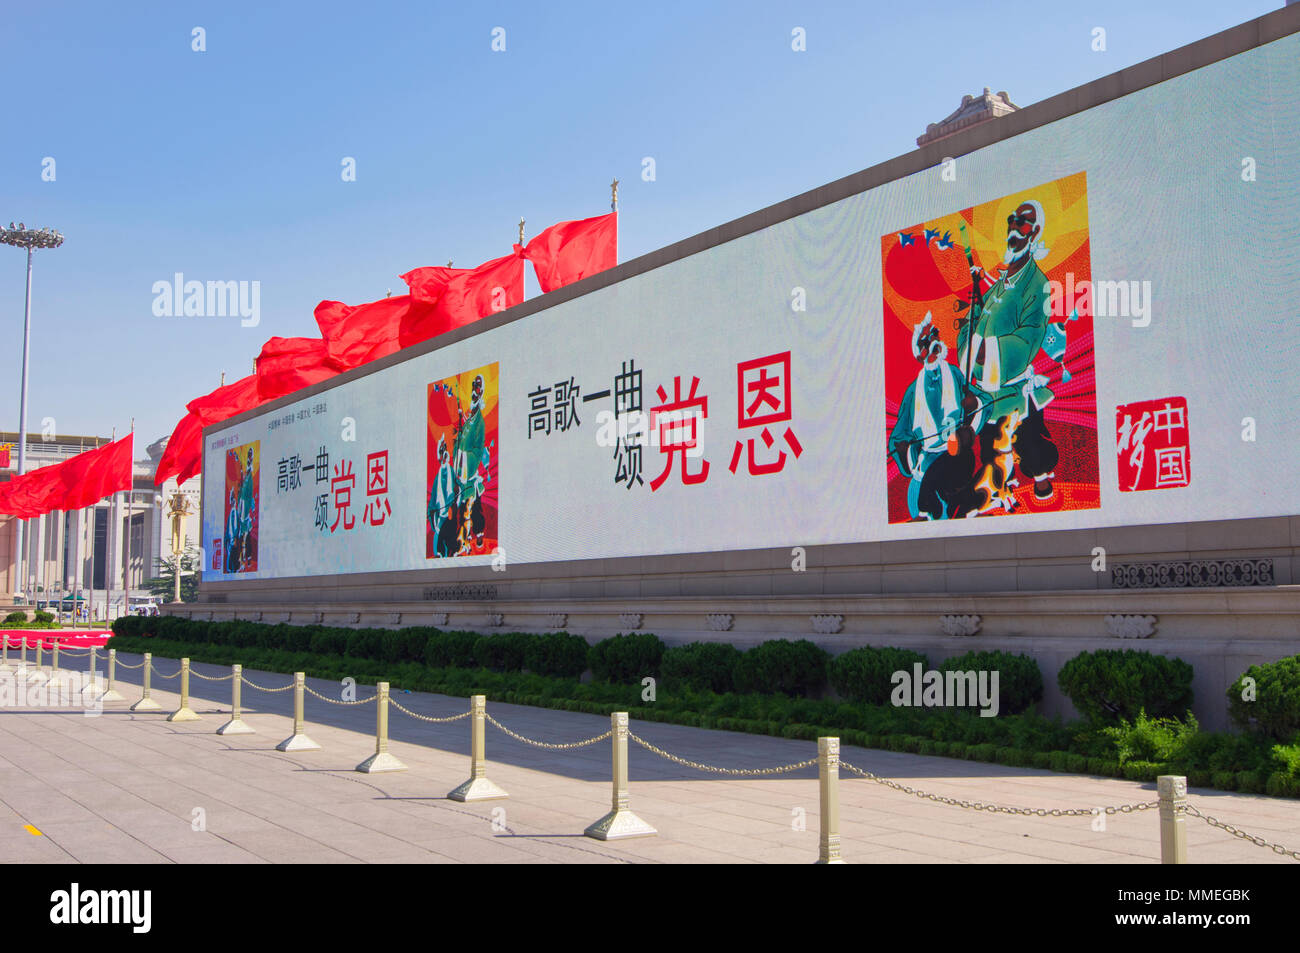 Un grand écran électronique de sélection en face du Musée national de Chine sur la Place Tiananmen, à Beijing, Chine. Banque D'Images